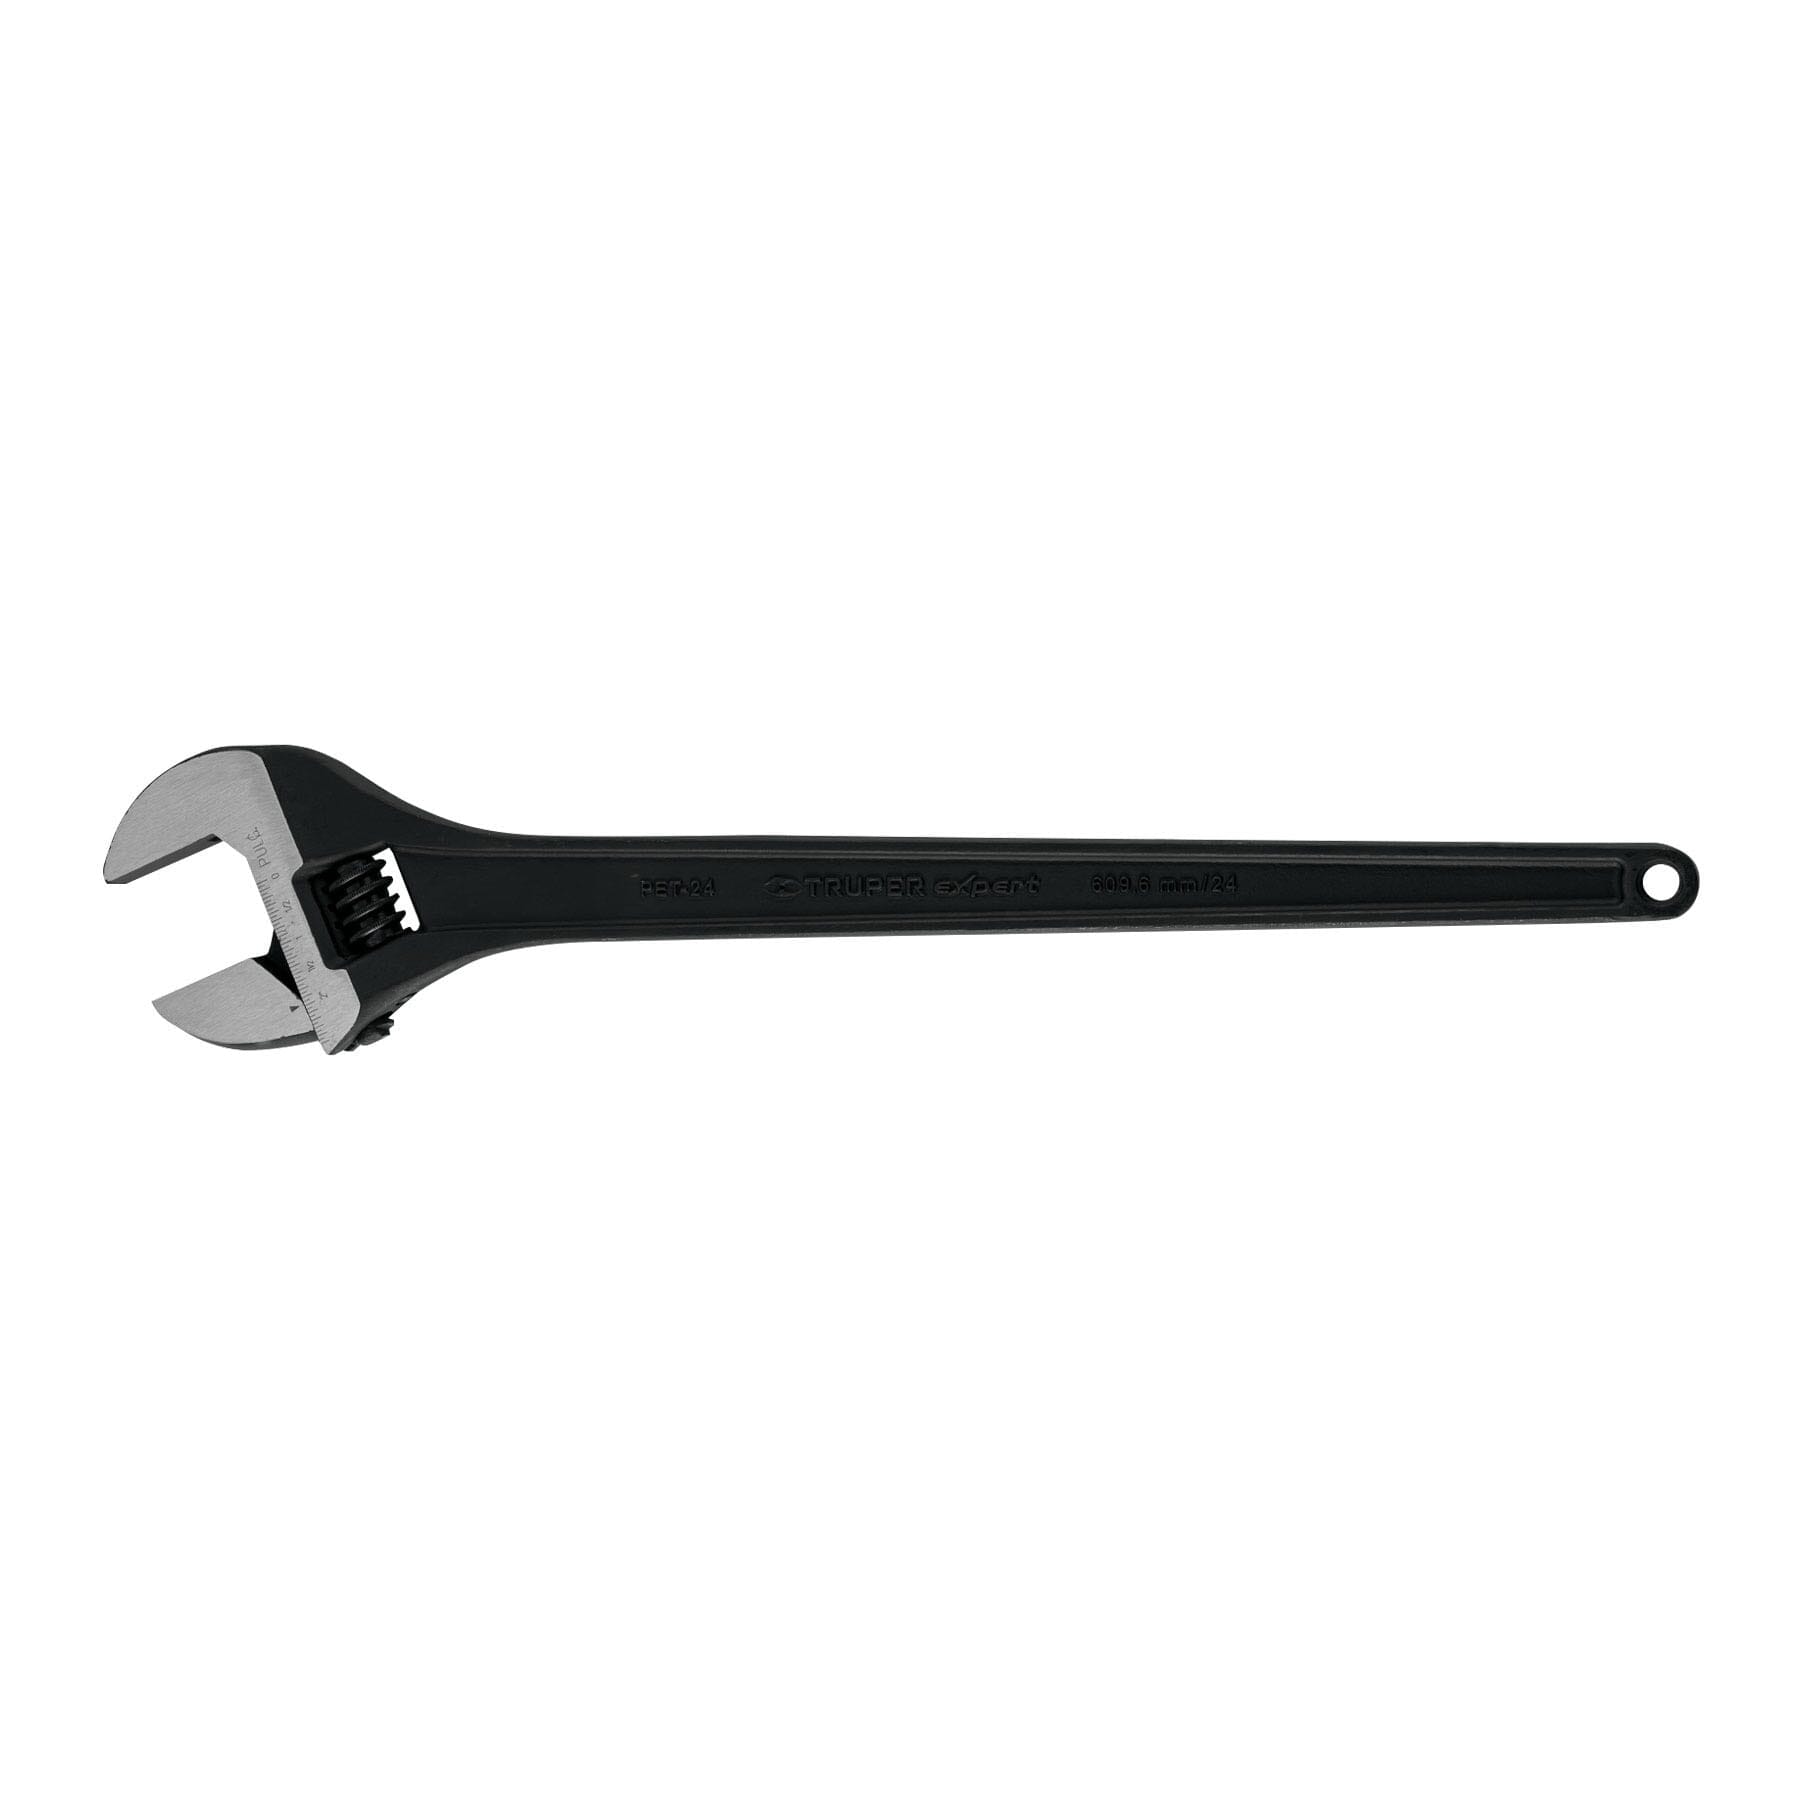 Truper Adjustable Wrench - Black Oxide 600mm